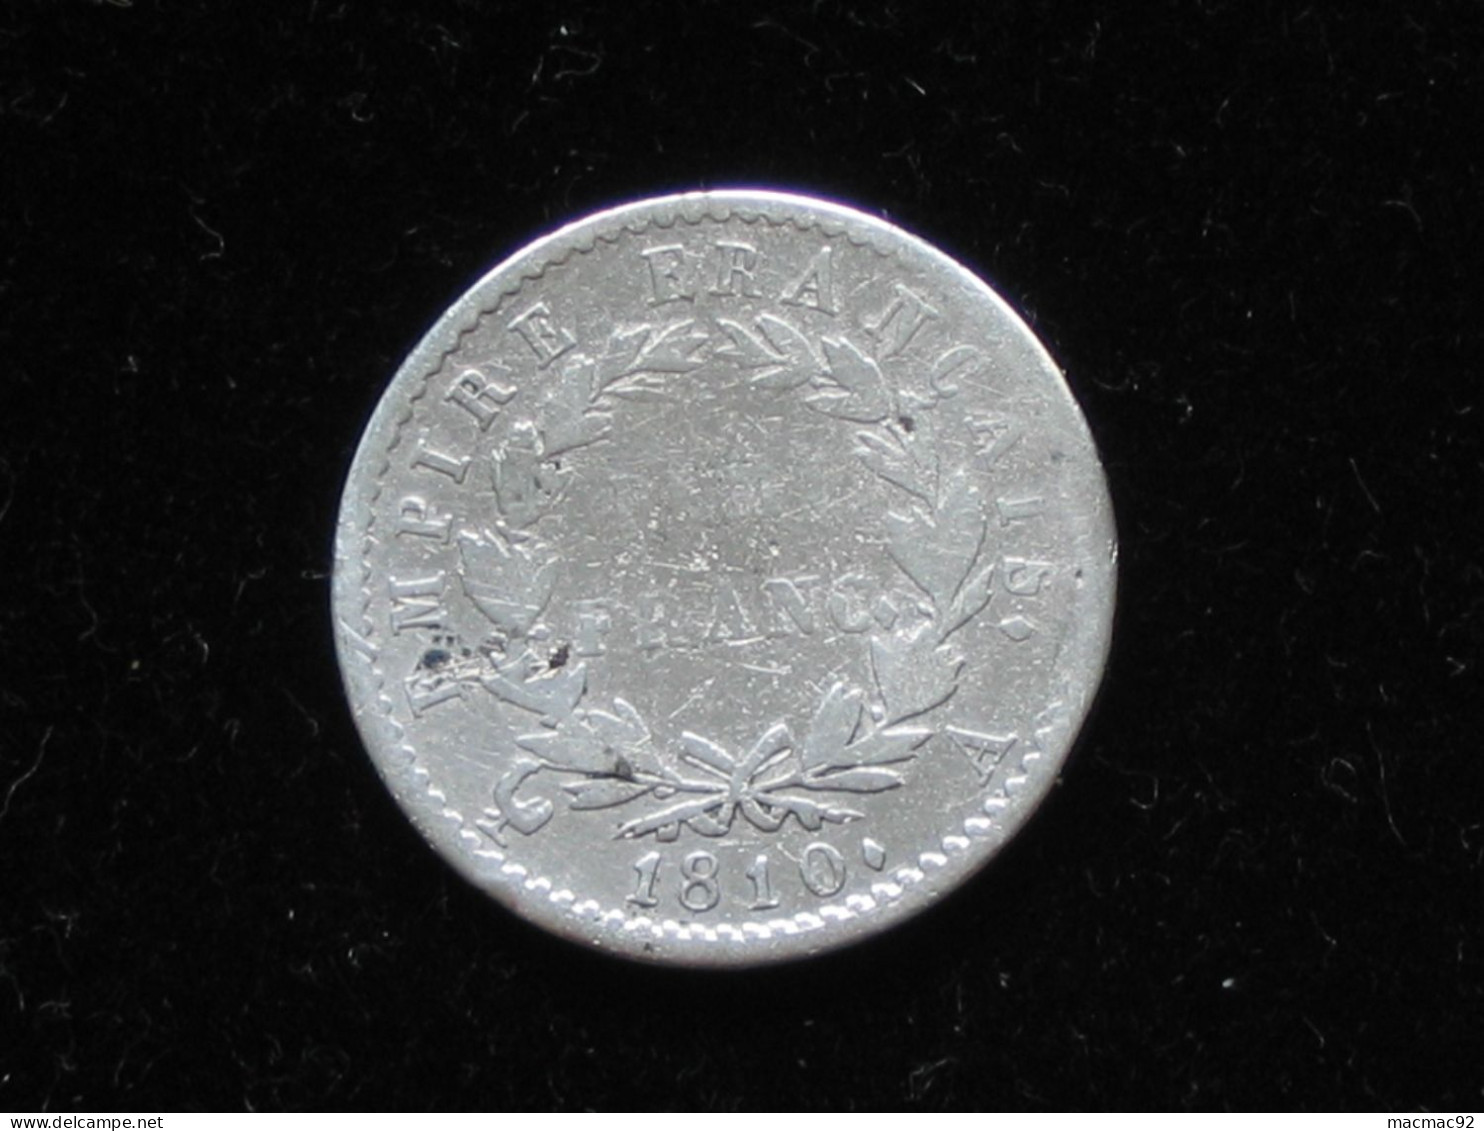 50 Centimes Ou Demi-franc  1810 A -  Napoléon 1er -  1er Empire  **** EN ACHAT IMMEDIAT **** - 1/2 Franc